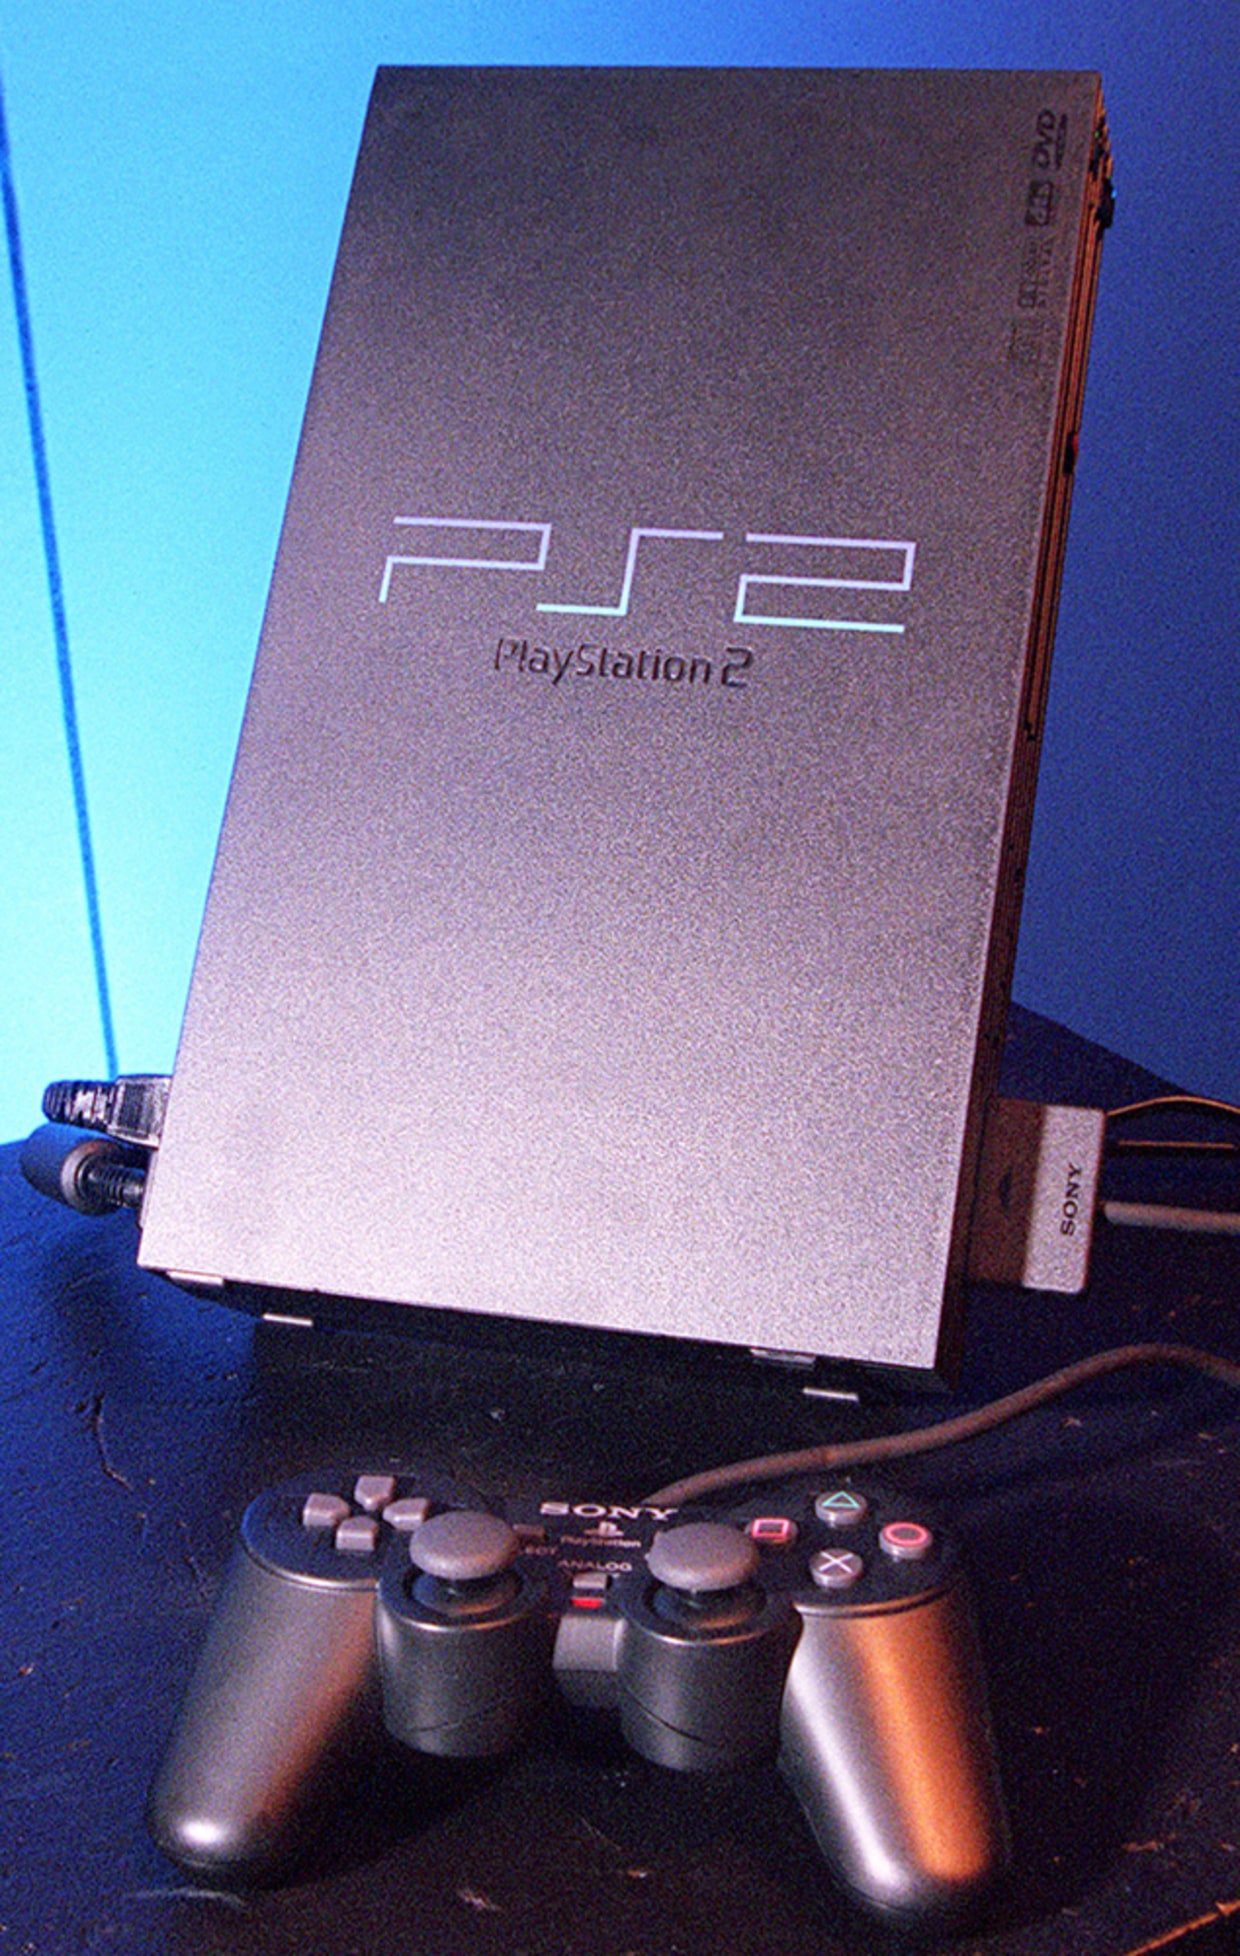 Despite its age, PlayStation 2 still rocks